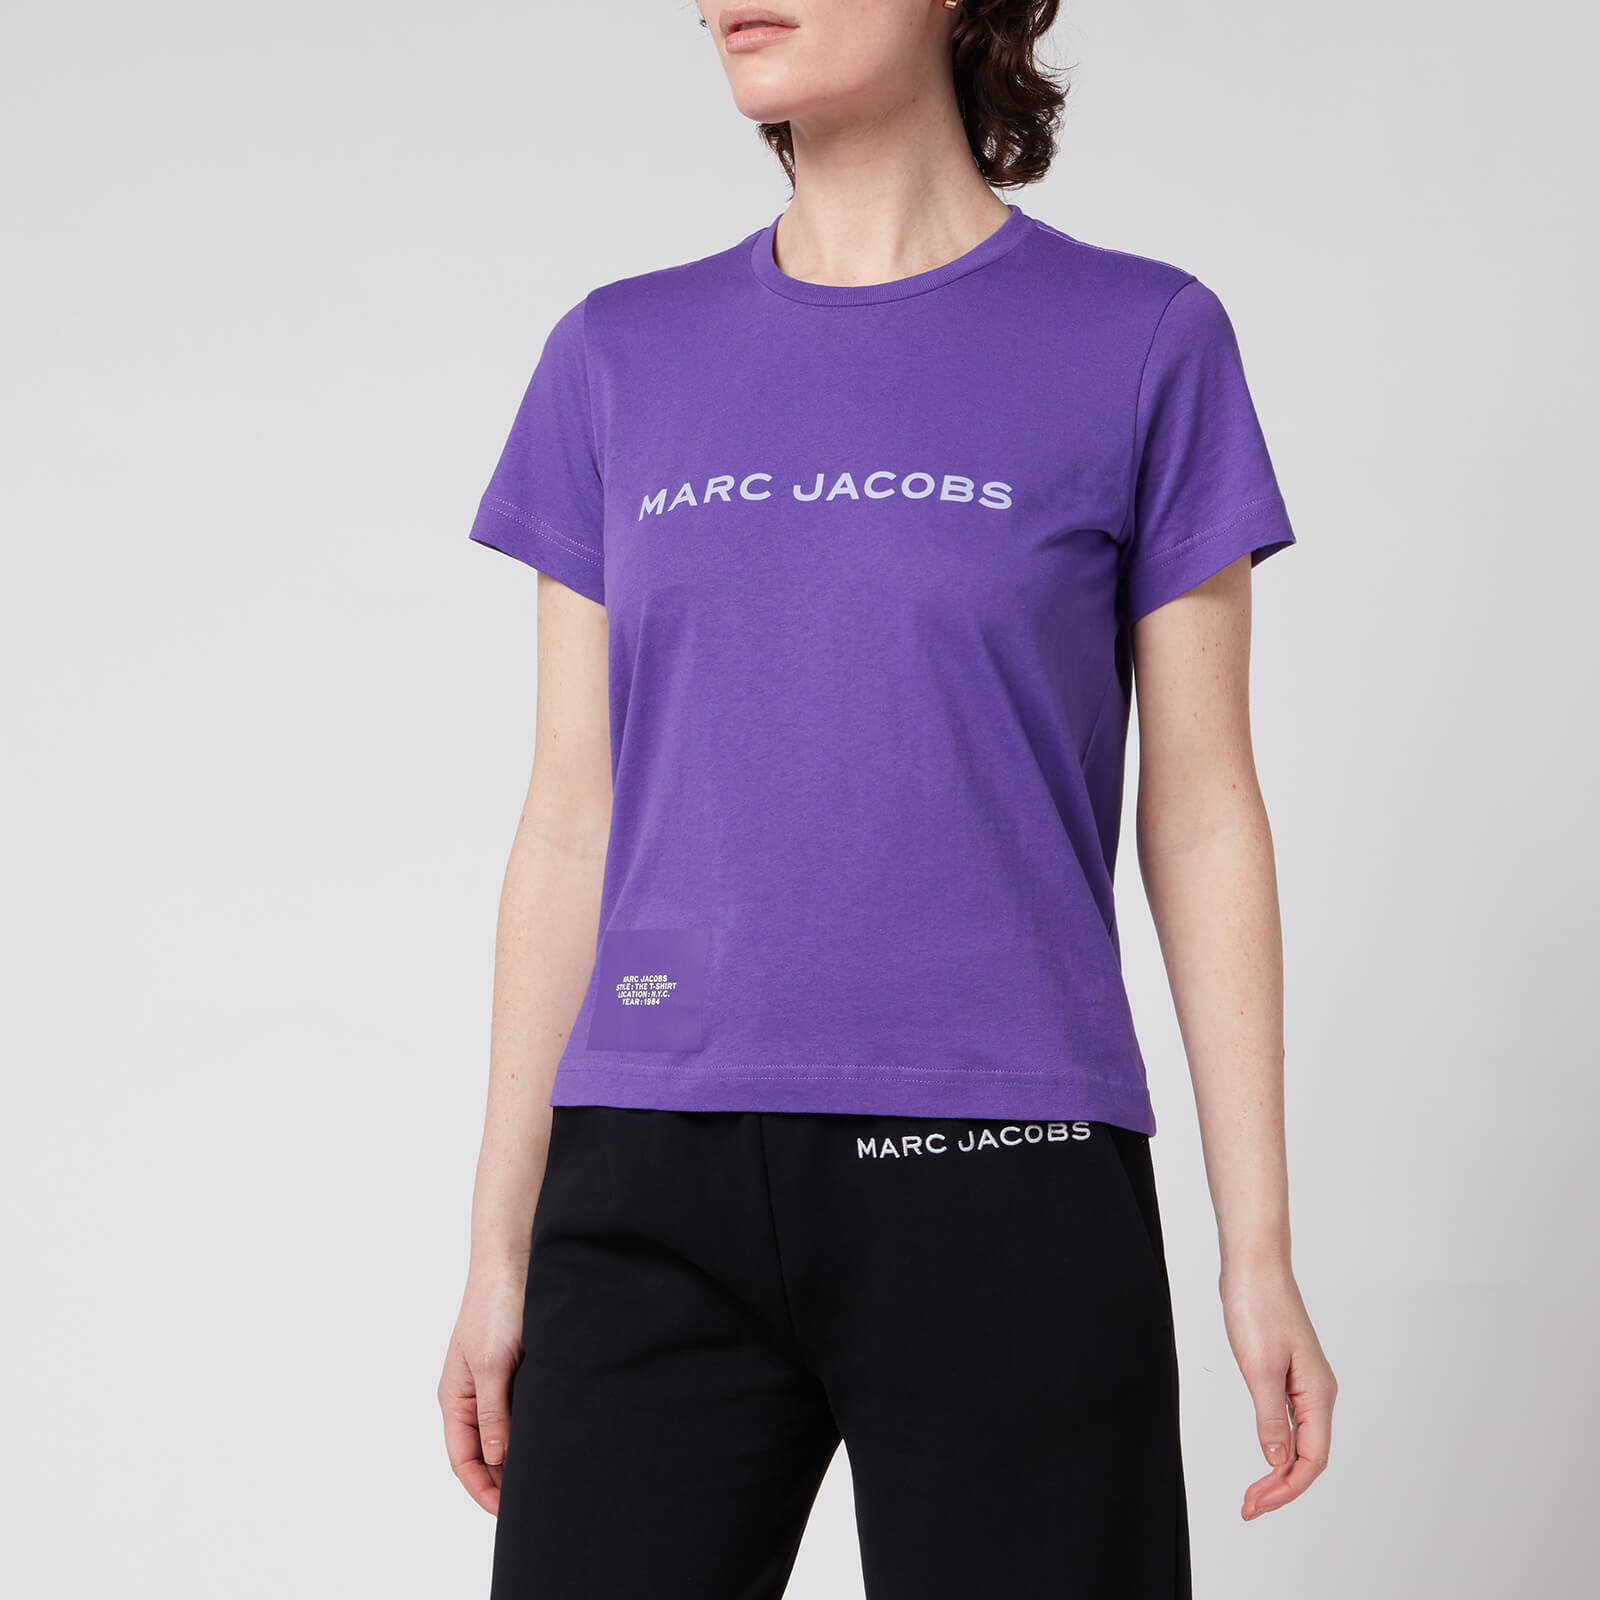 Marc Jacobs Women's The T-Shirt - Purple Potion - XS